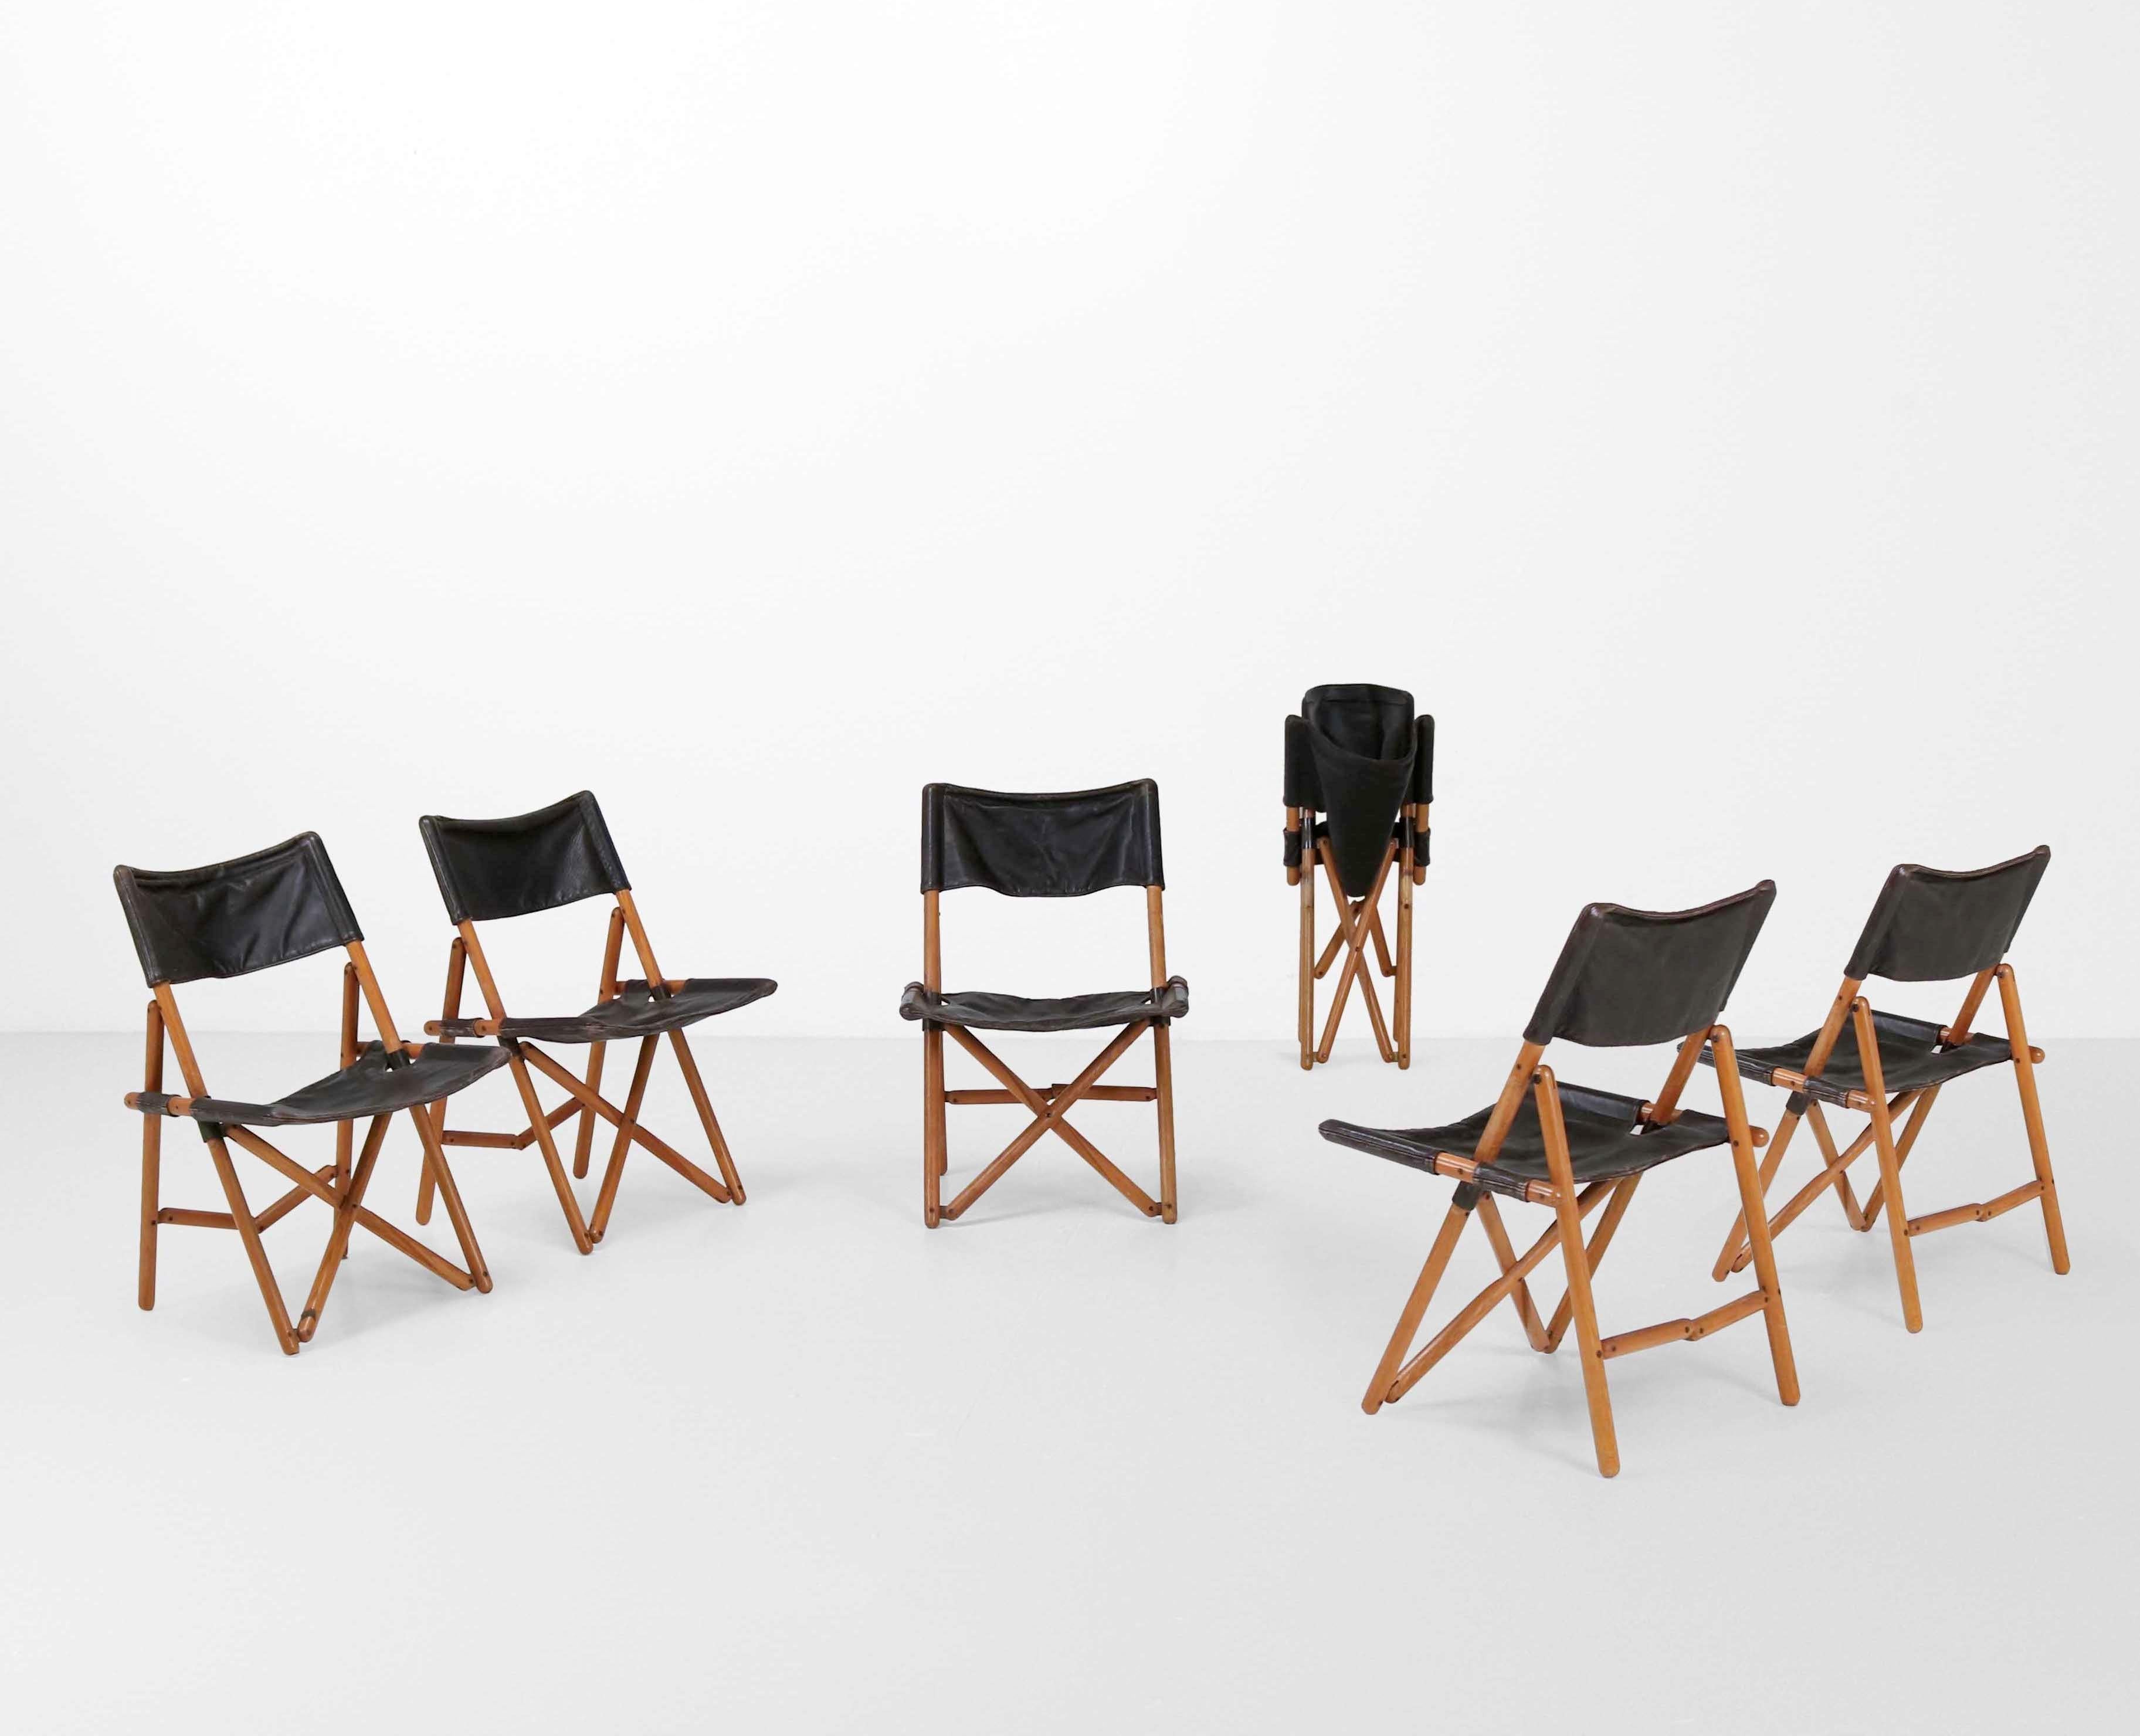 
Diese sechs Klappstühle Modell Navy von Sergio Asti repräsentieren eine italienische Design-Finesse. Die 1969 für Zanotta gefertigten Stühle haben eine Holzstruktur, die durch Metalldetails und luxuriöse Ledersitze und -lehnen ergänzt wird. Das